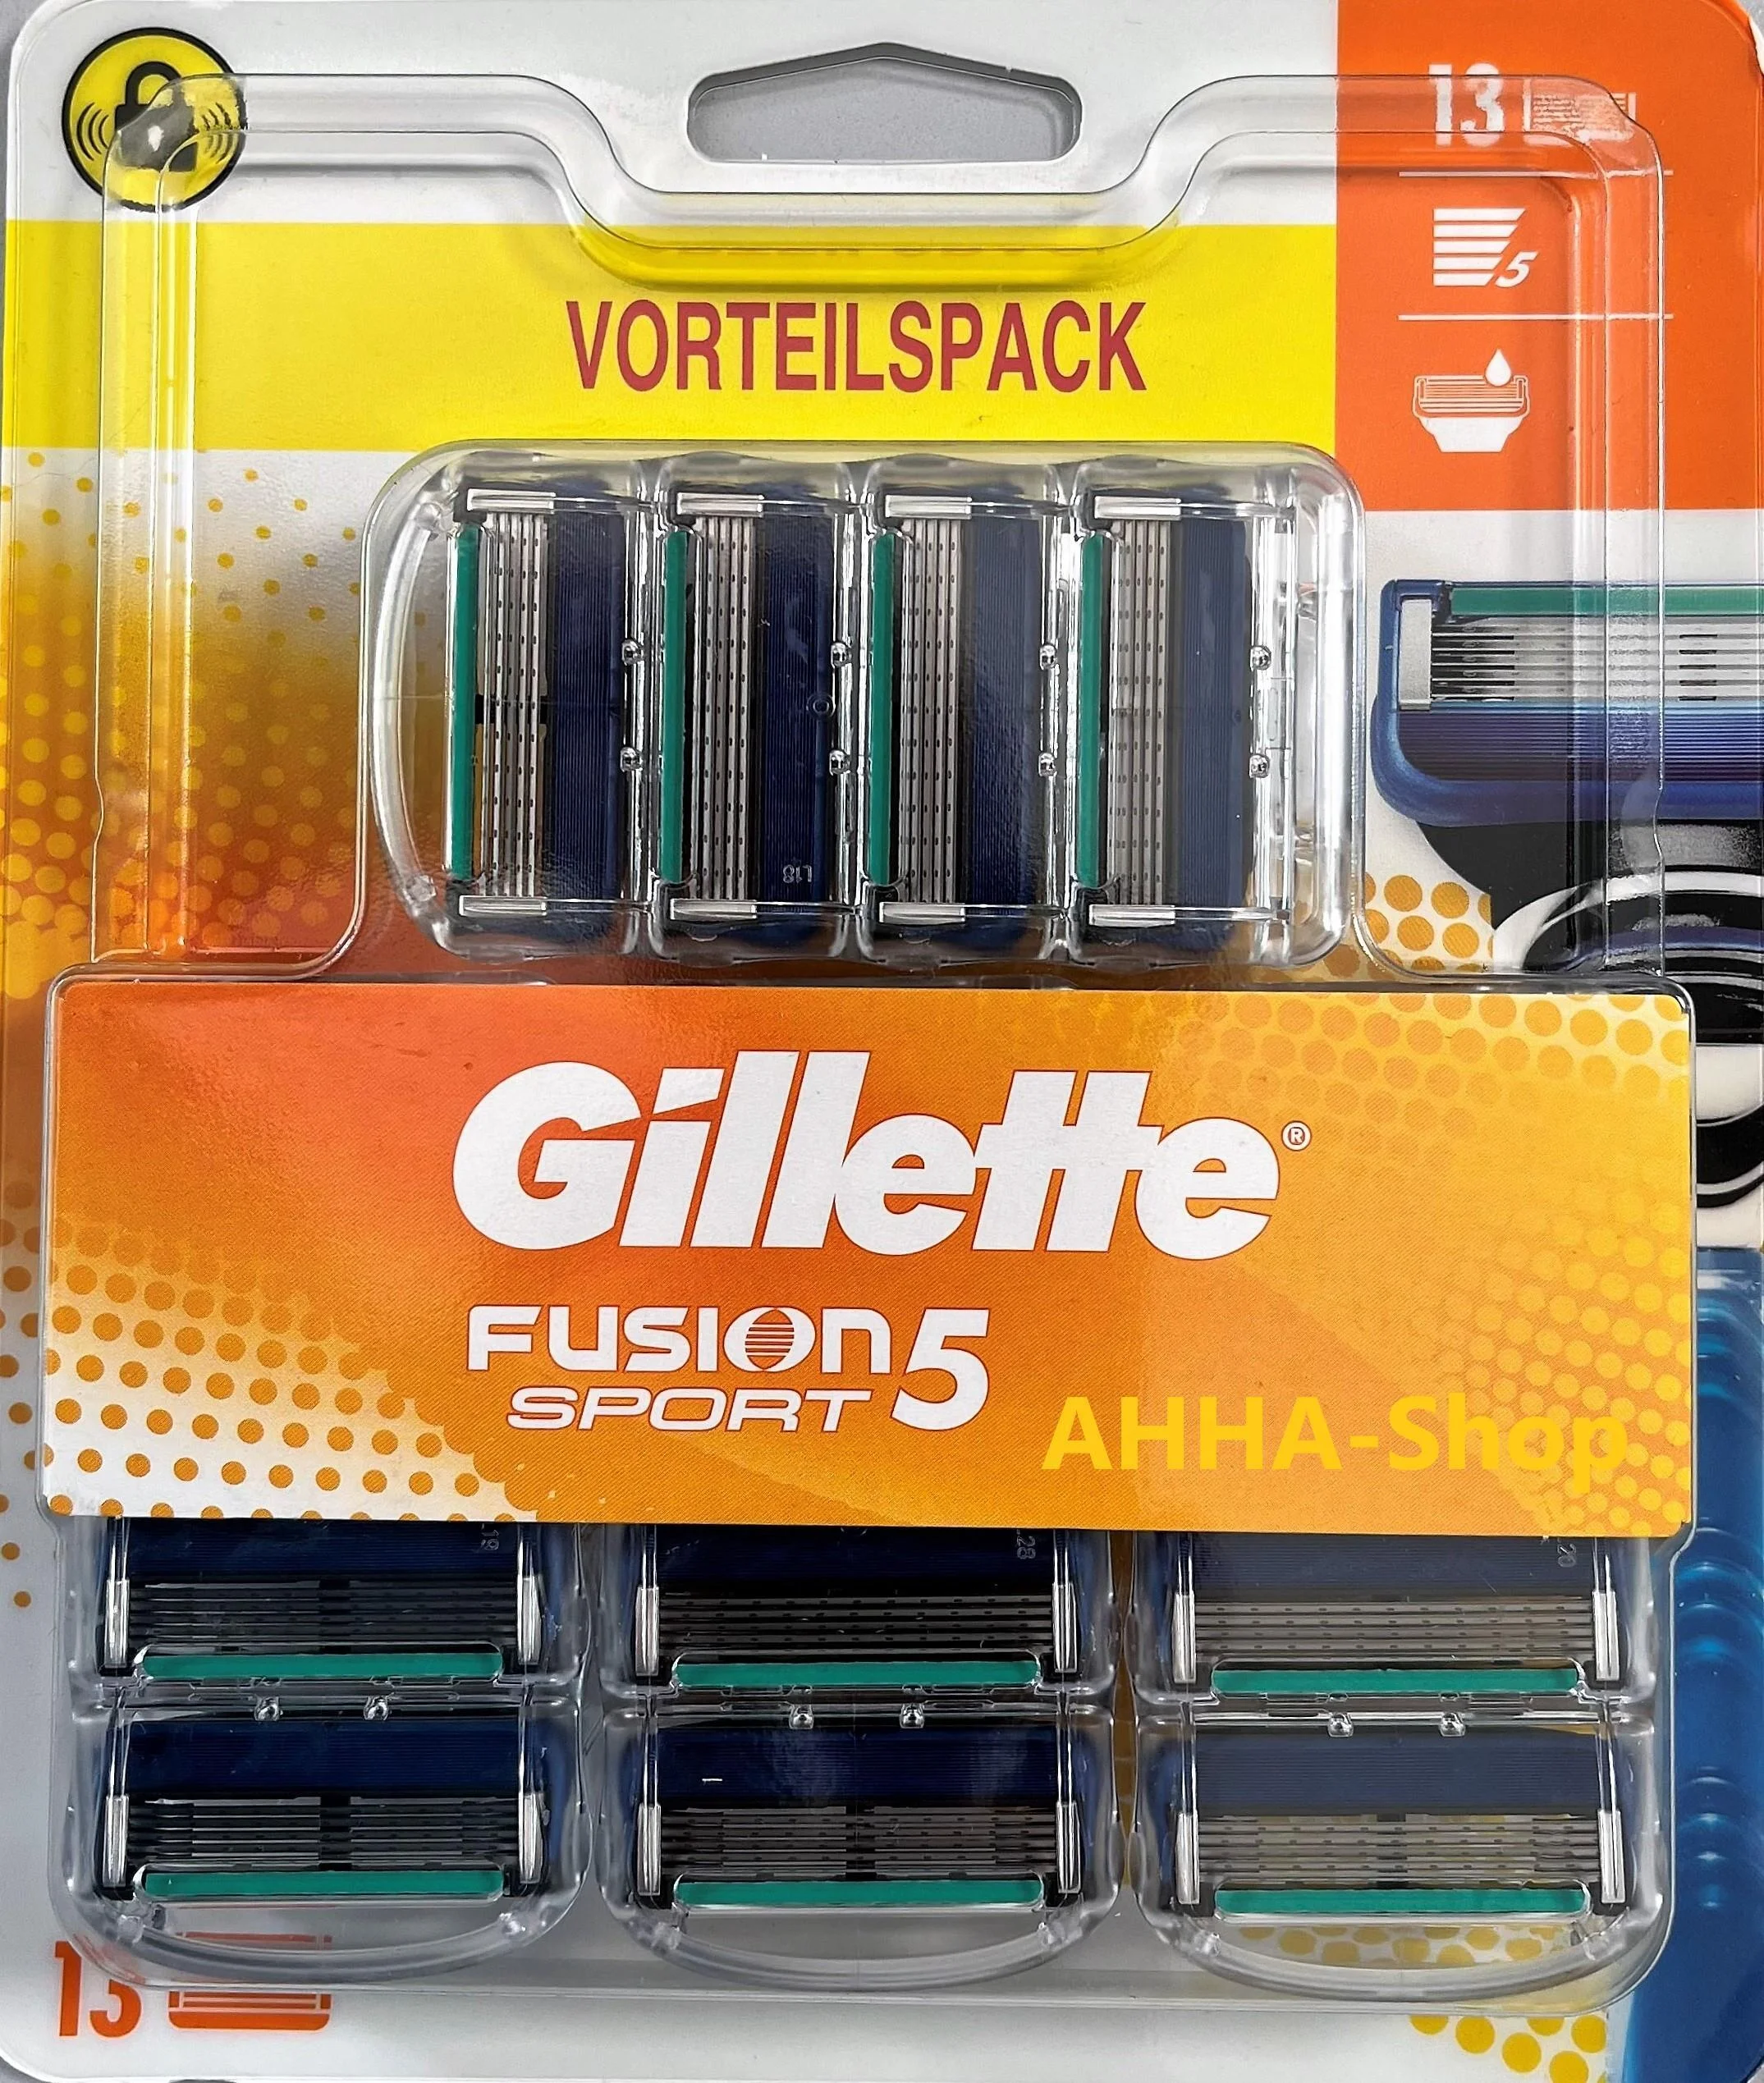 Gillette Fusion 5 Rasierklingen, blau, 13 Stück/Pack